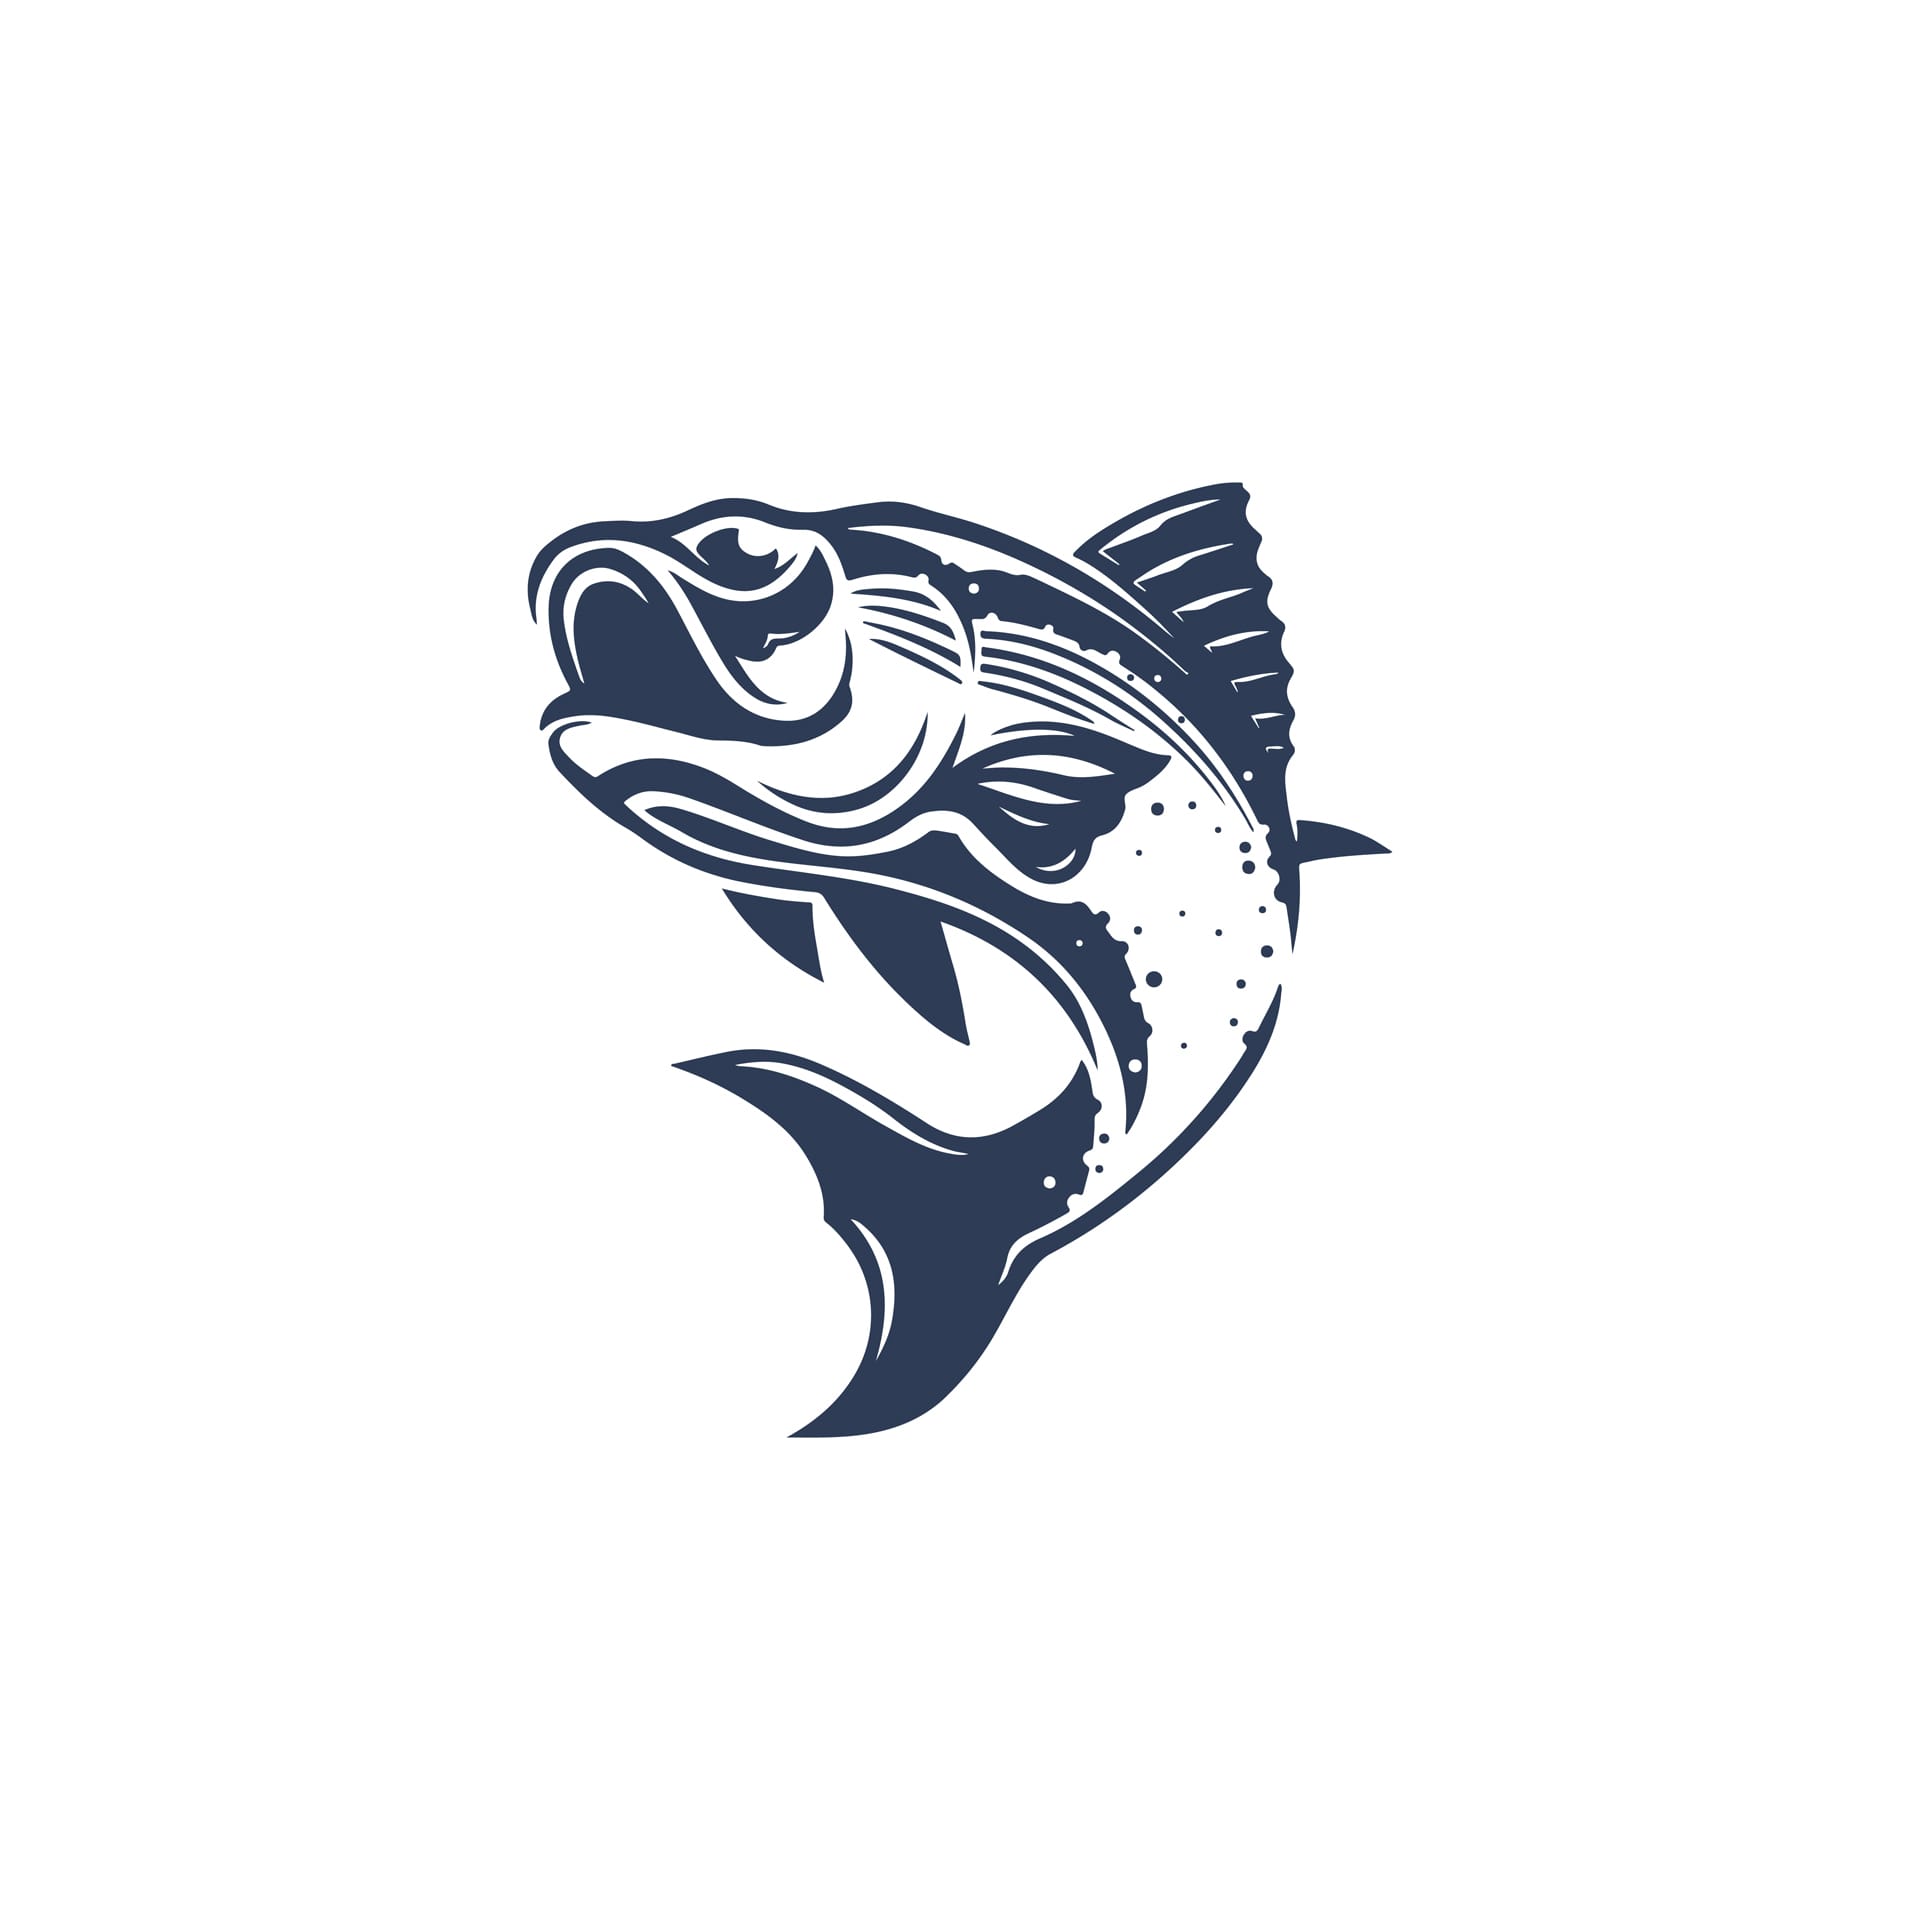 Fishing fish water logo vintage design